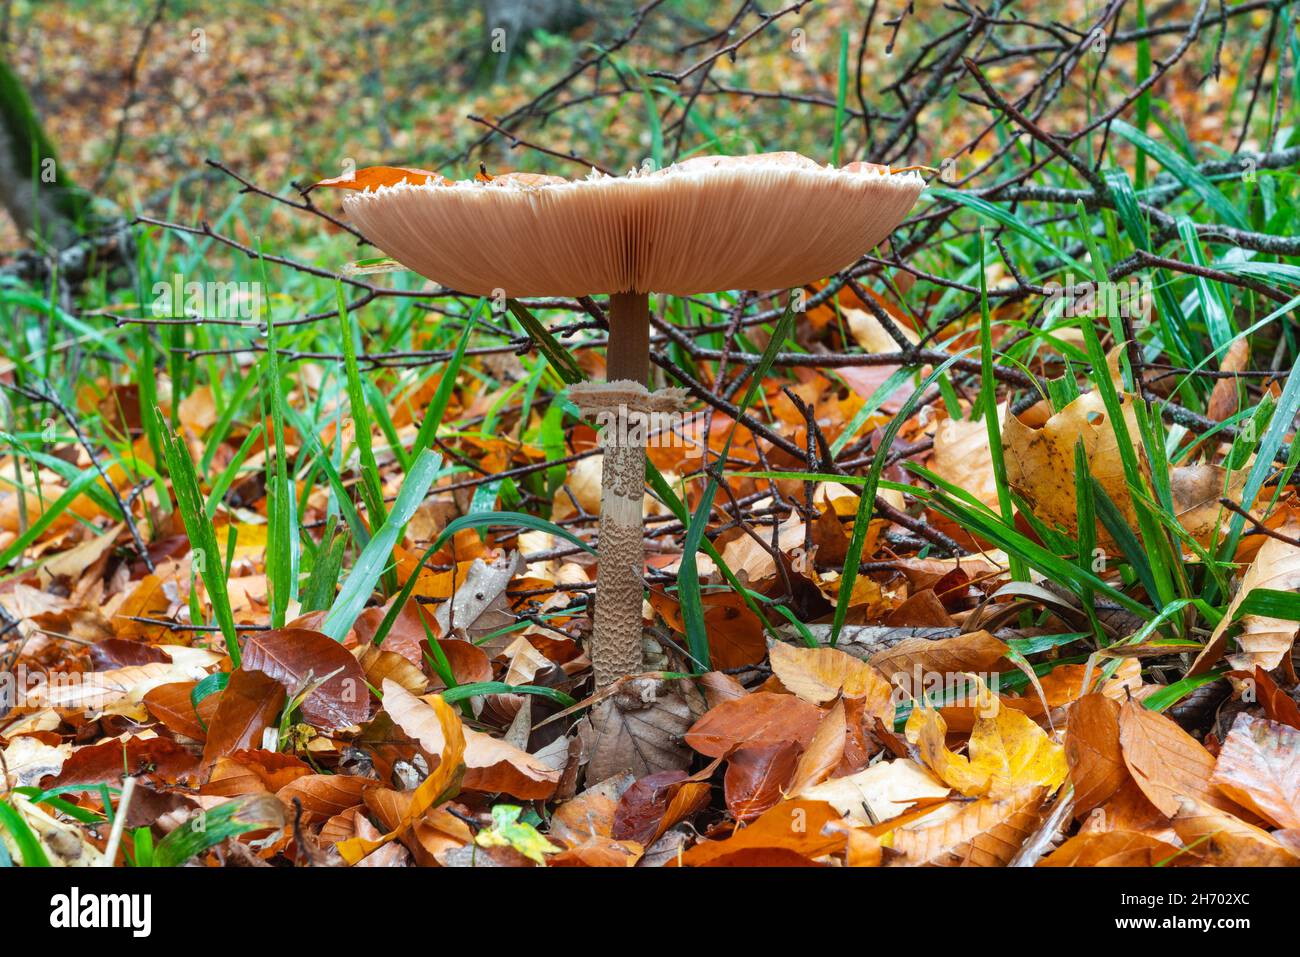 Shaggy Parasol mushroom in a forest. Chlorophyllum rhacodes Stock Photo